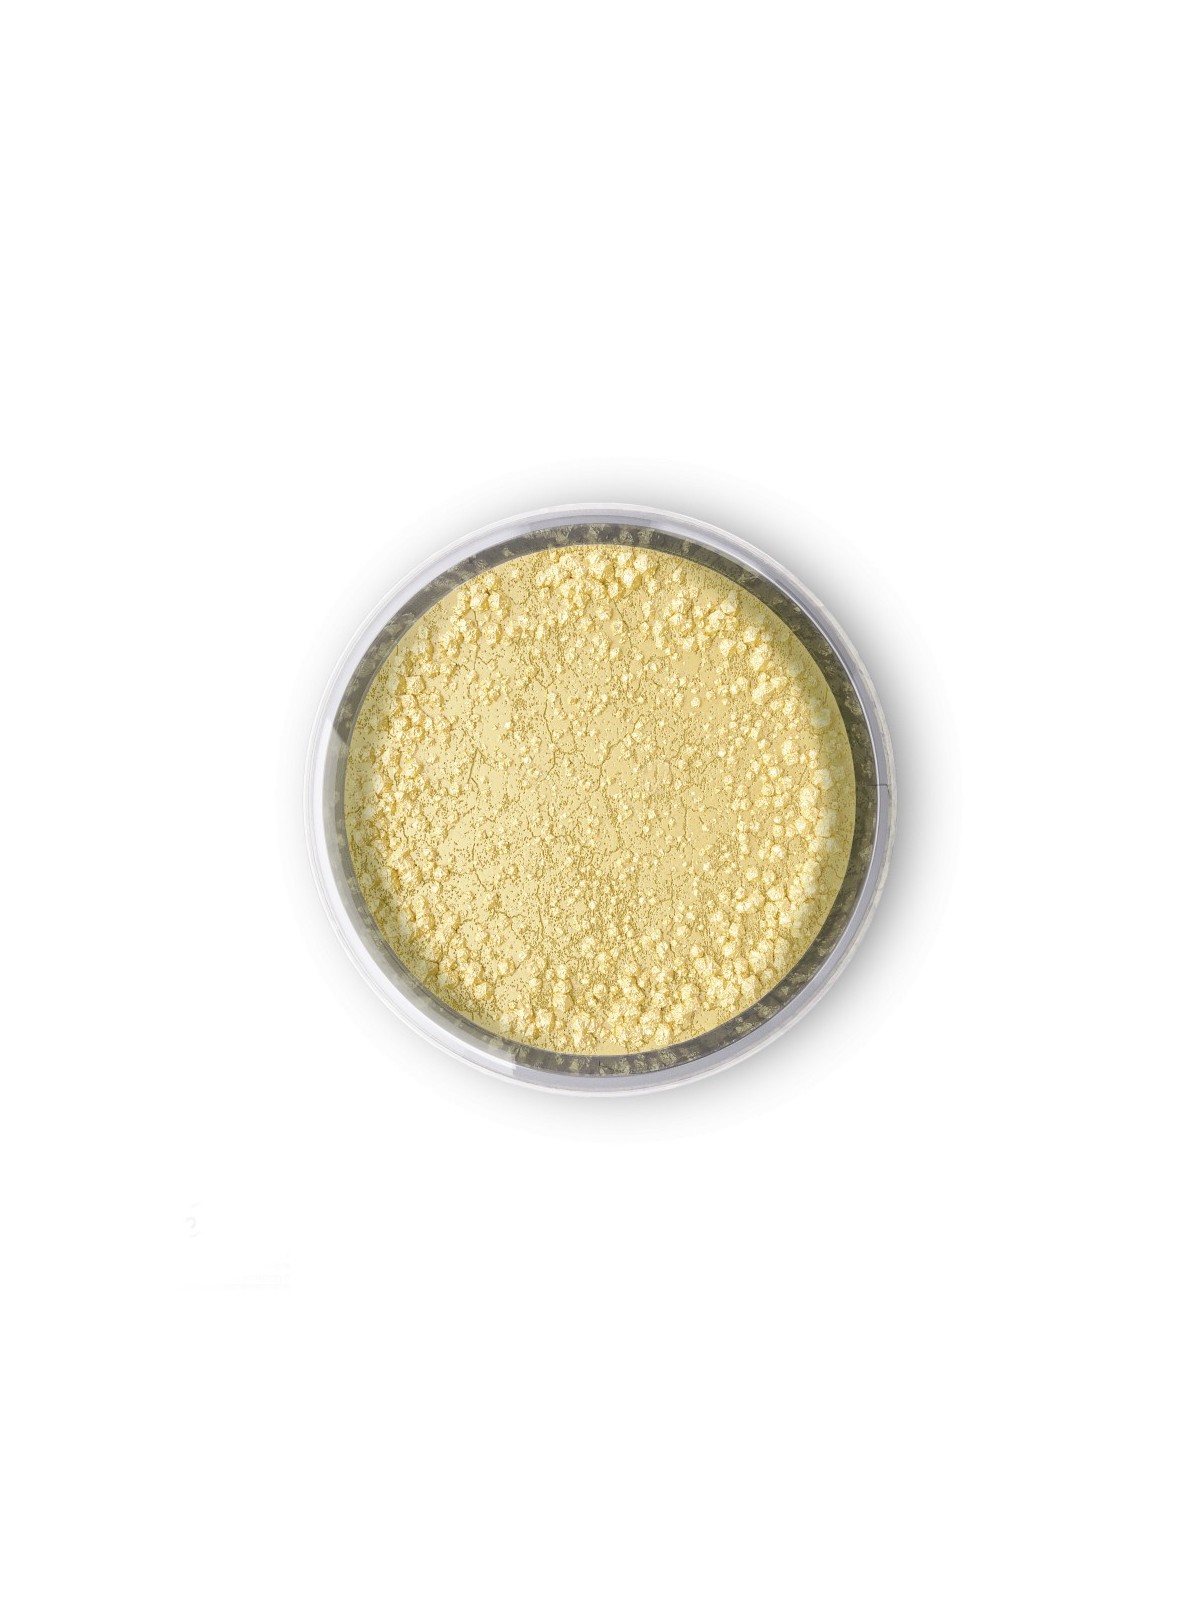 Essbaren Puderfarbe Fractal - Cream (4 g)